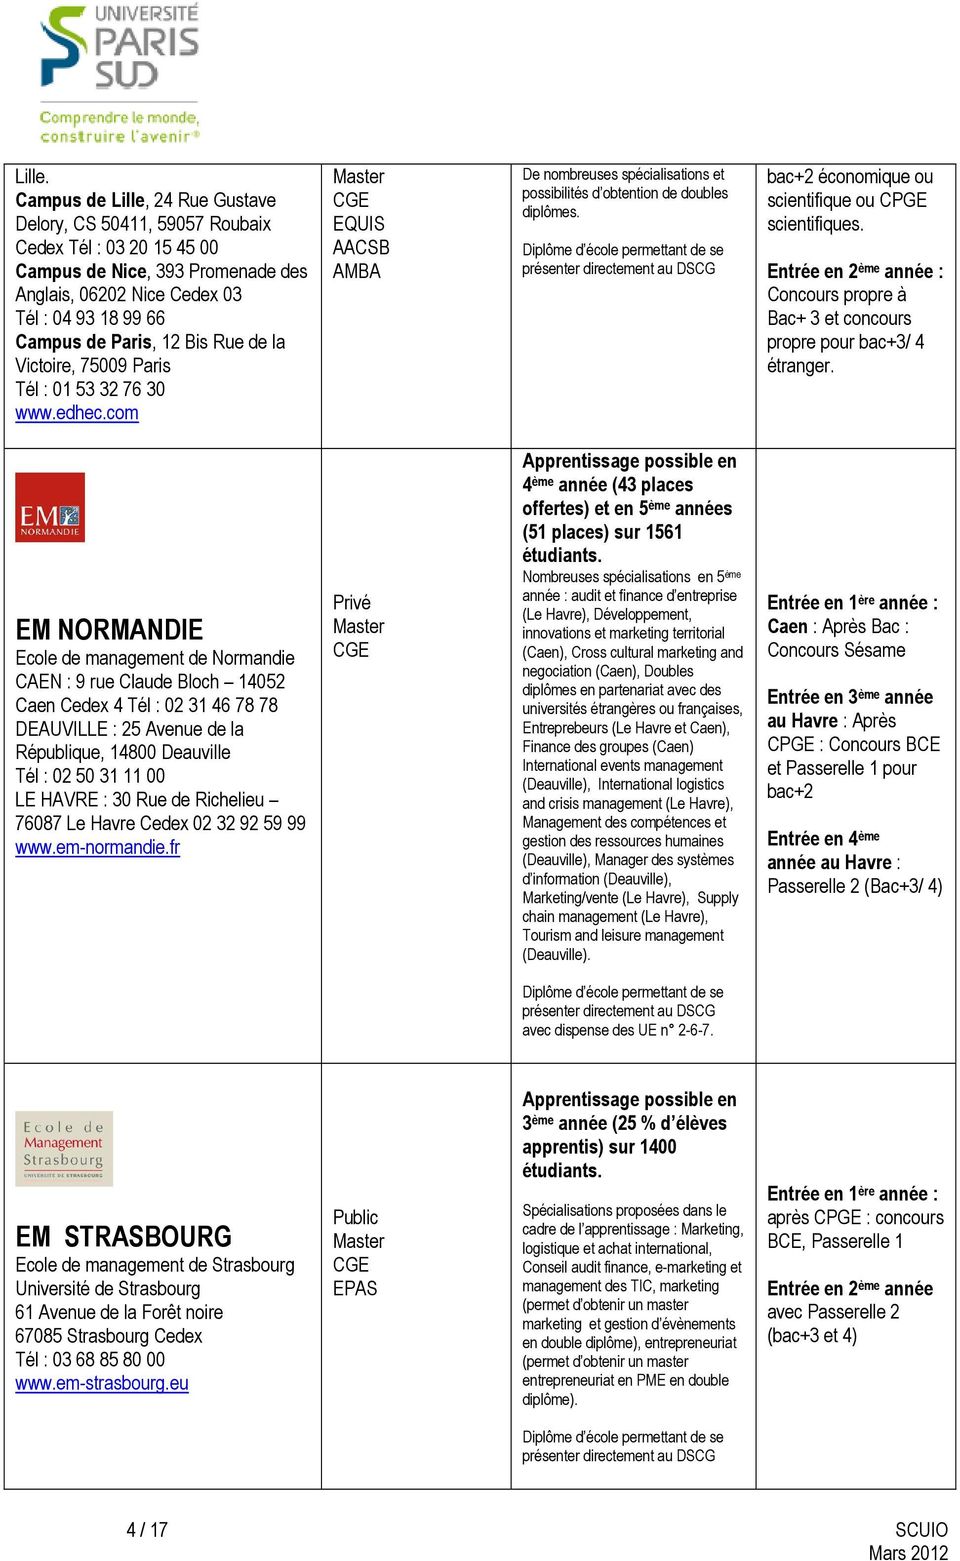 Rue de la Victoire, 75009 Paris Tél : 01 53 32 76 30 www.edhec.com De nombreuses spécialisations et possibilités d obtention de doubles diplômes.